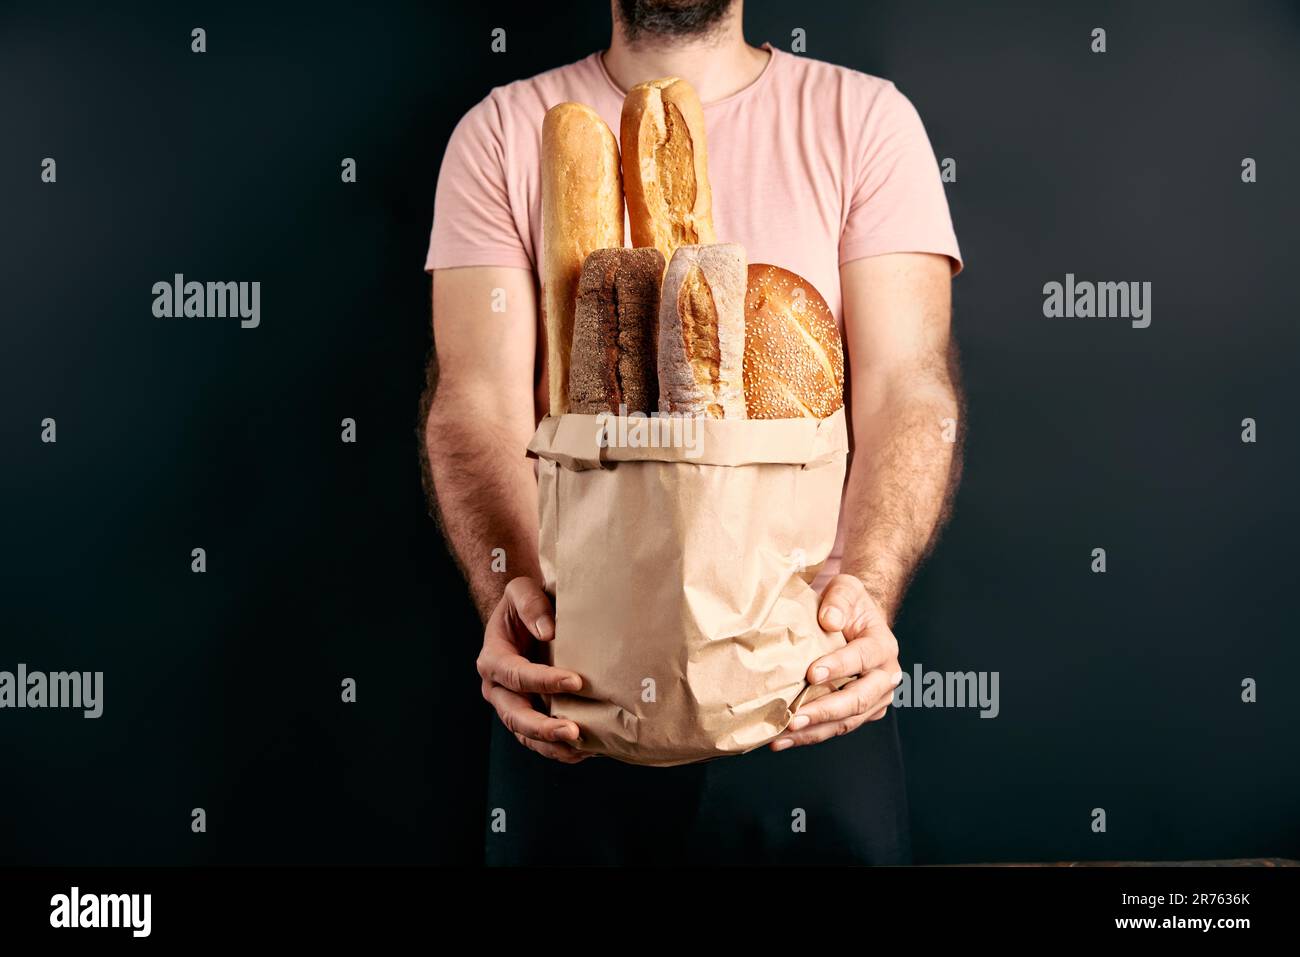 L'homme tient des pains frais de baguettes dans un sac de papier sur fond clair. Boulangerie, concept alimentaire Banque D'Images